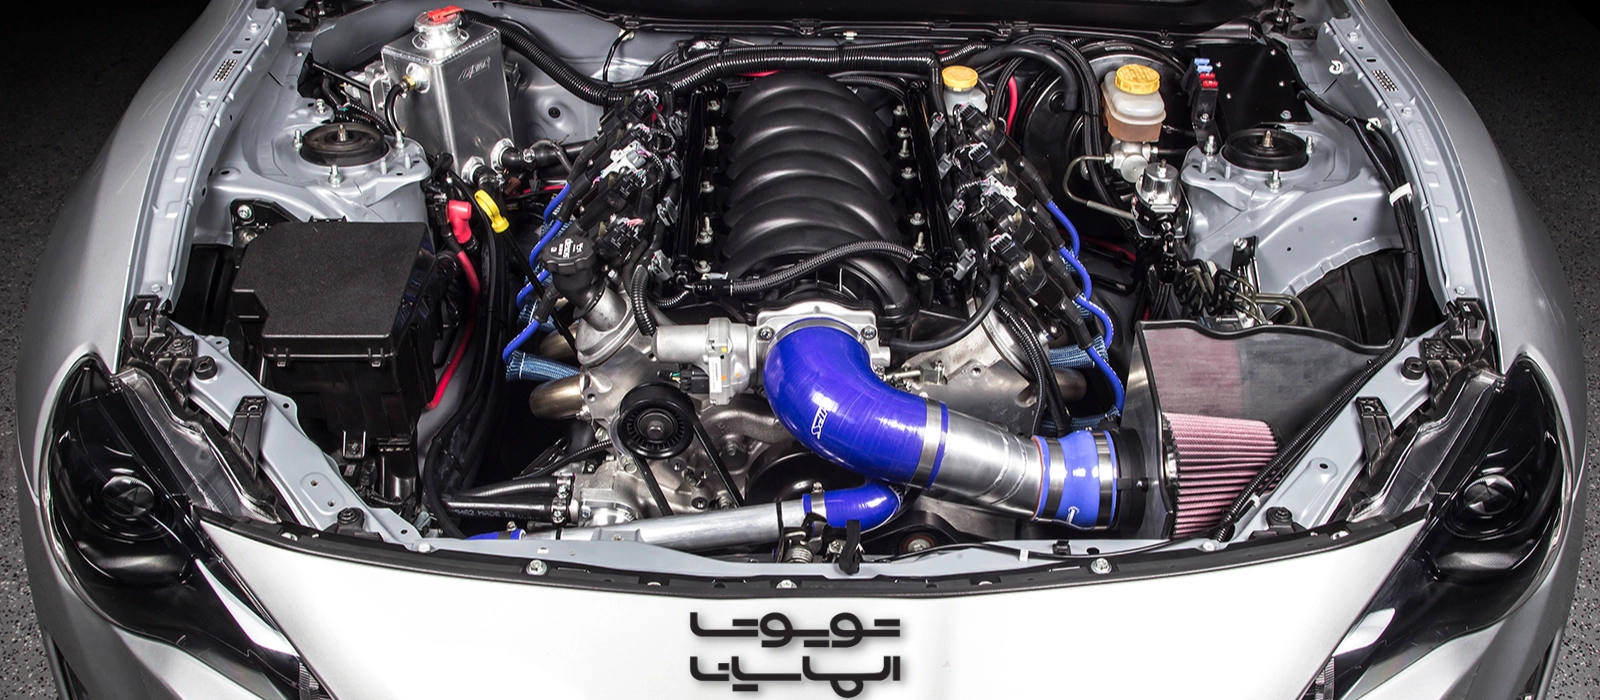 قلب تپنده GT86: موتوری قدرتمند و نیازمند مراقبت